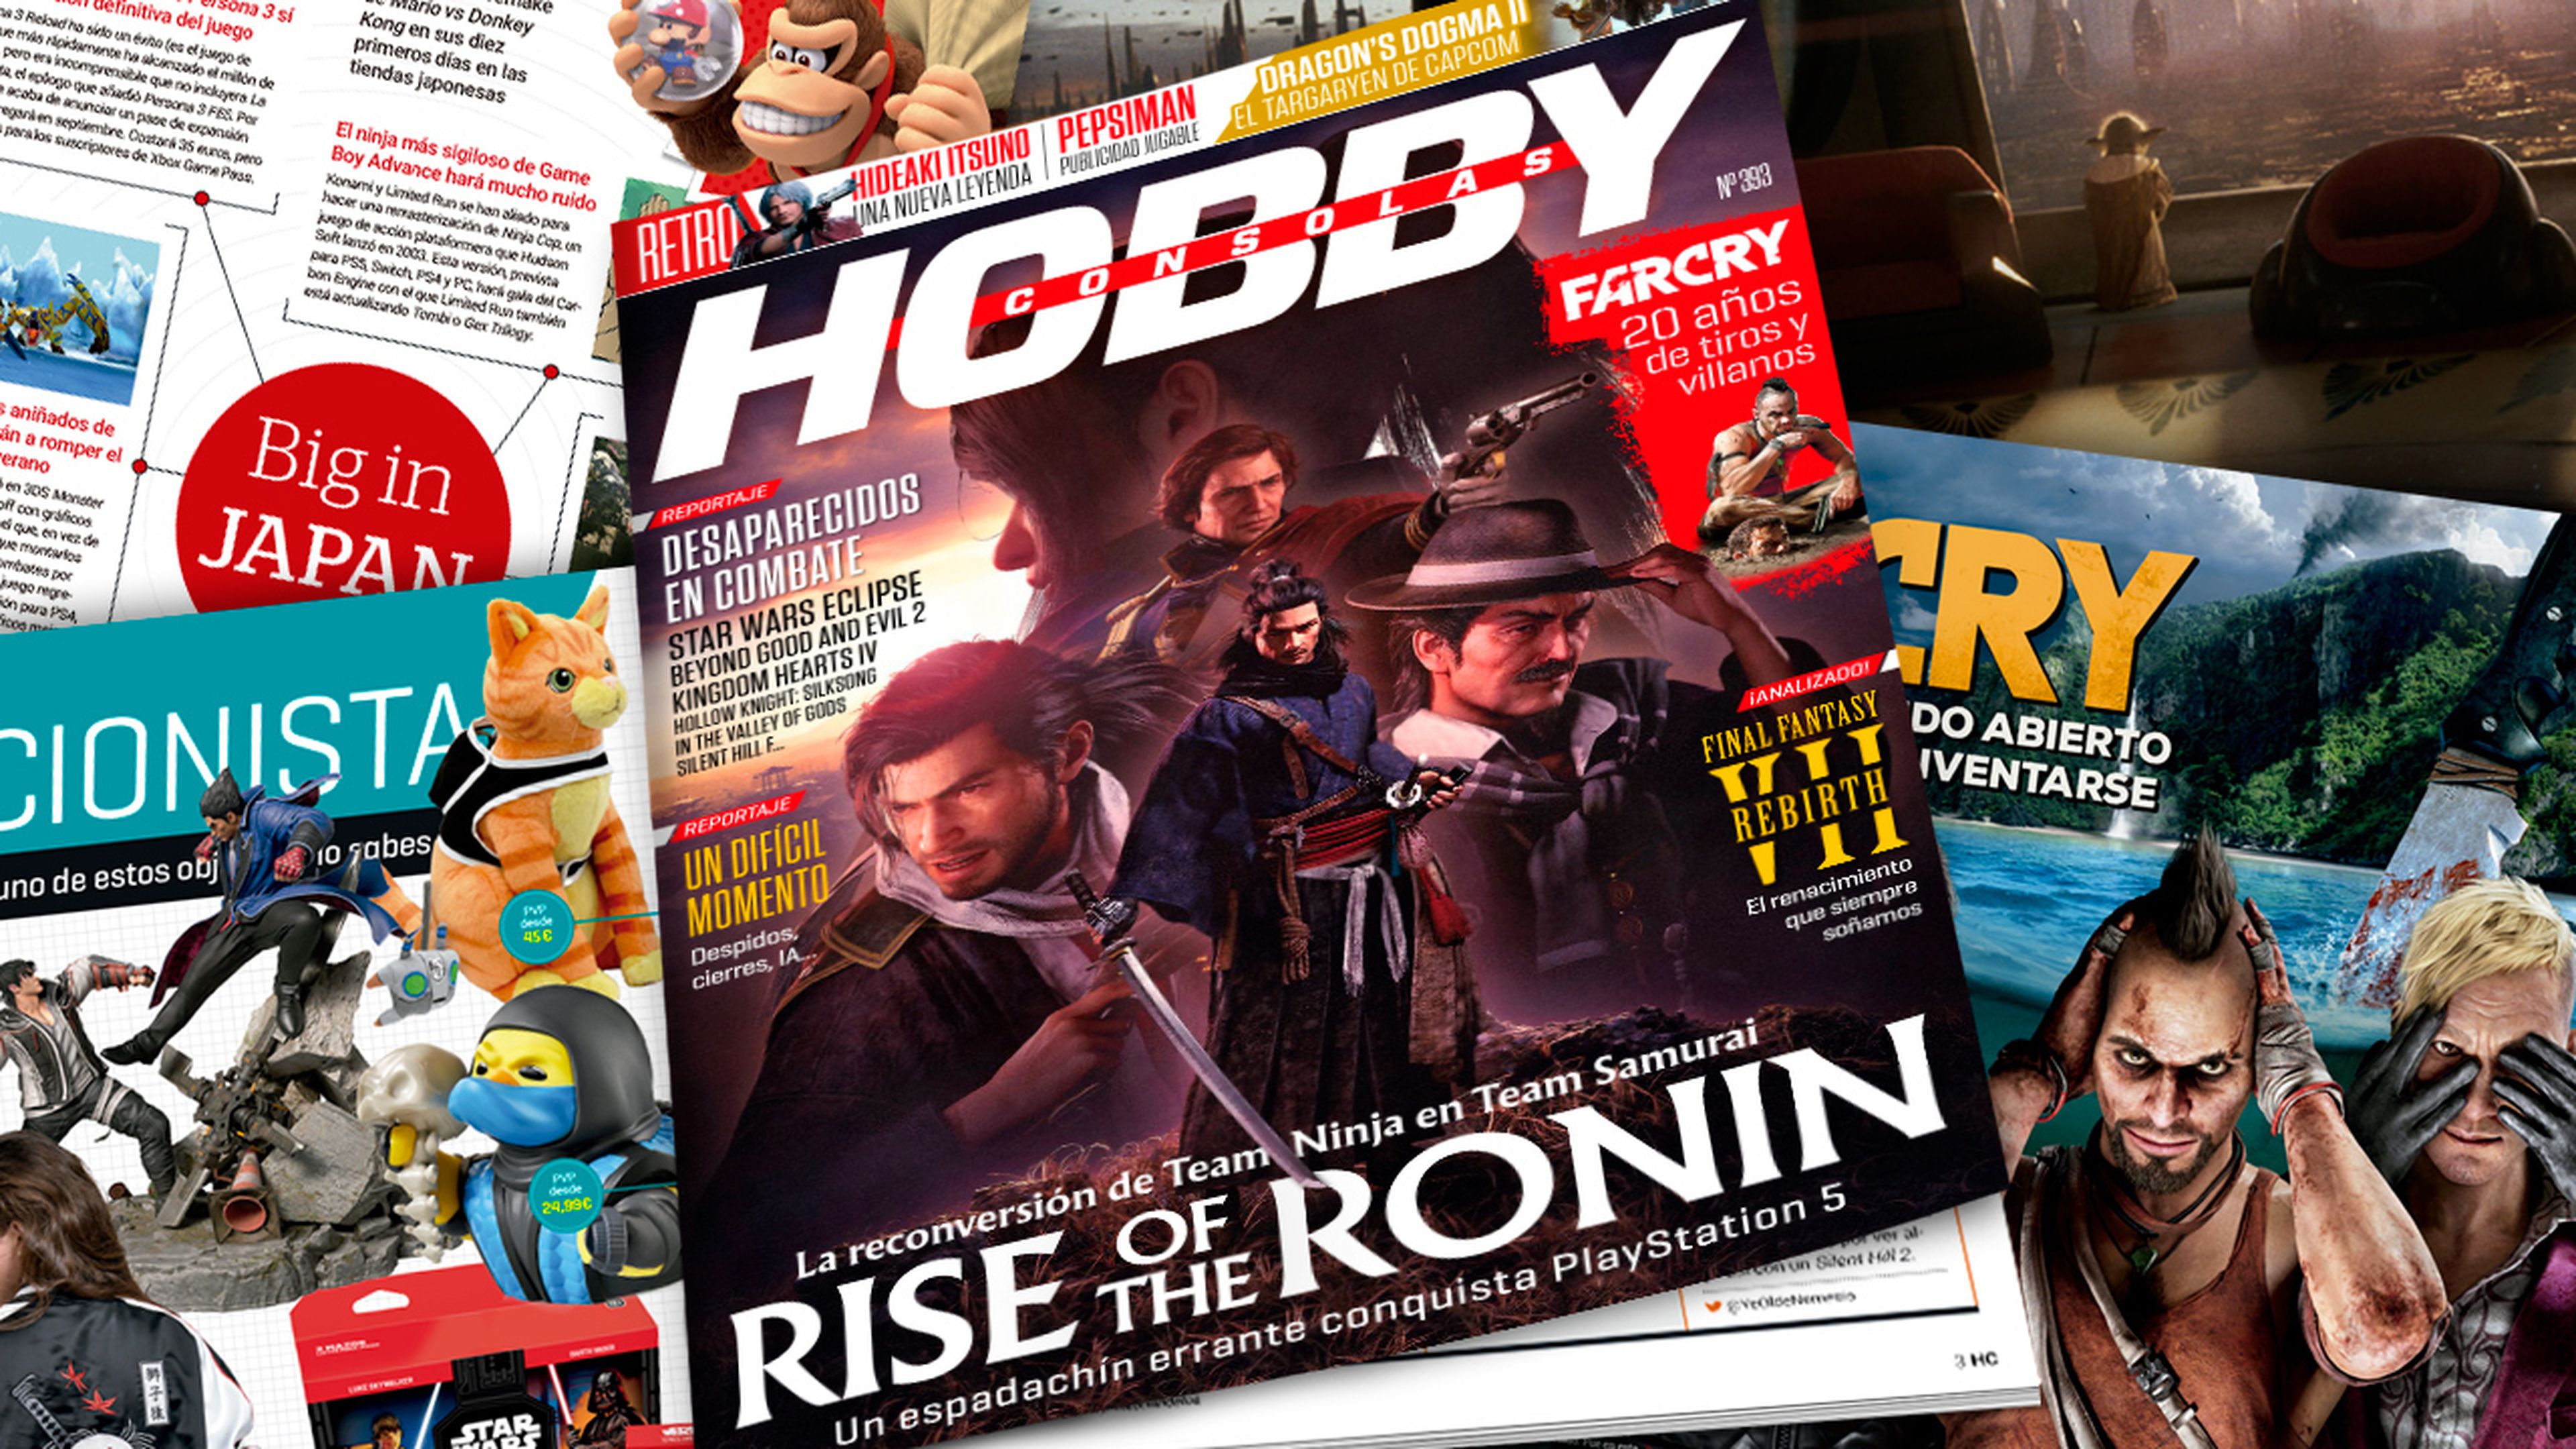 Hobby Consolas 393, ya a la venta, con Rise of the Ronin en portada